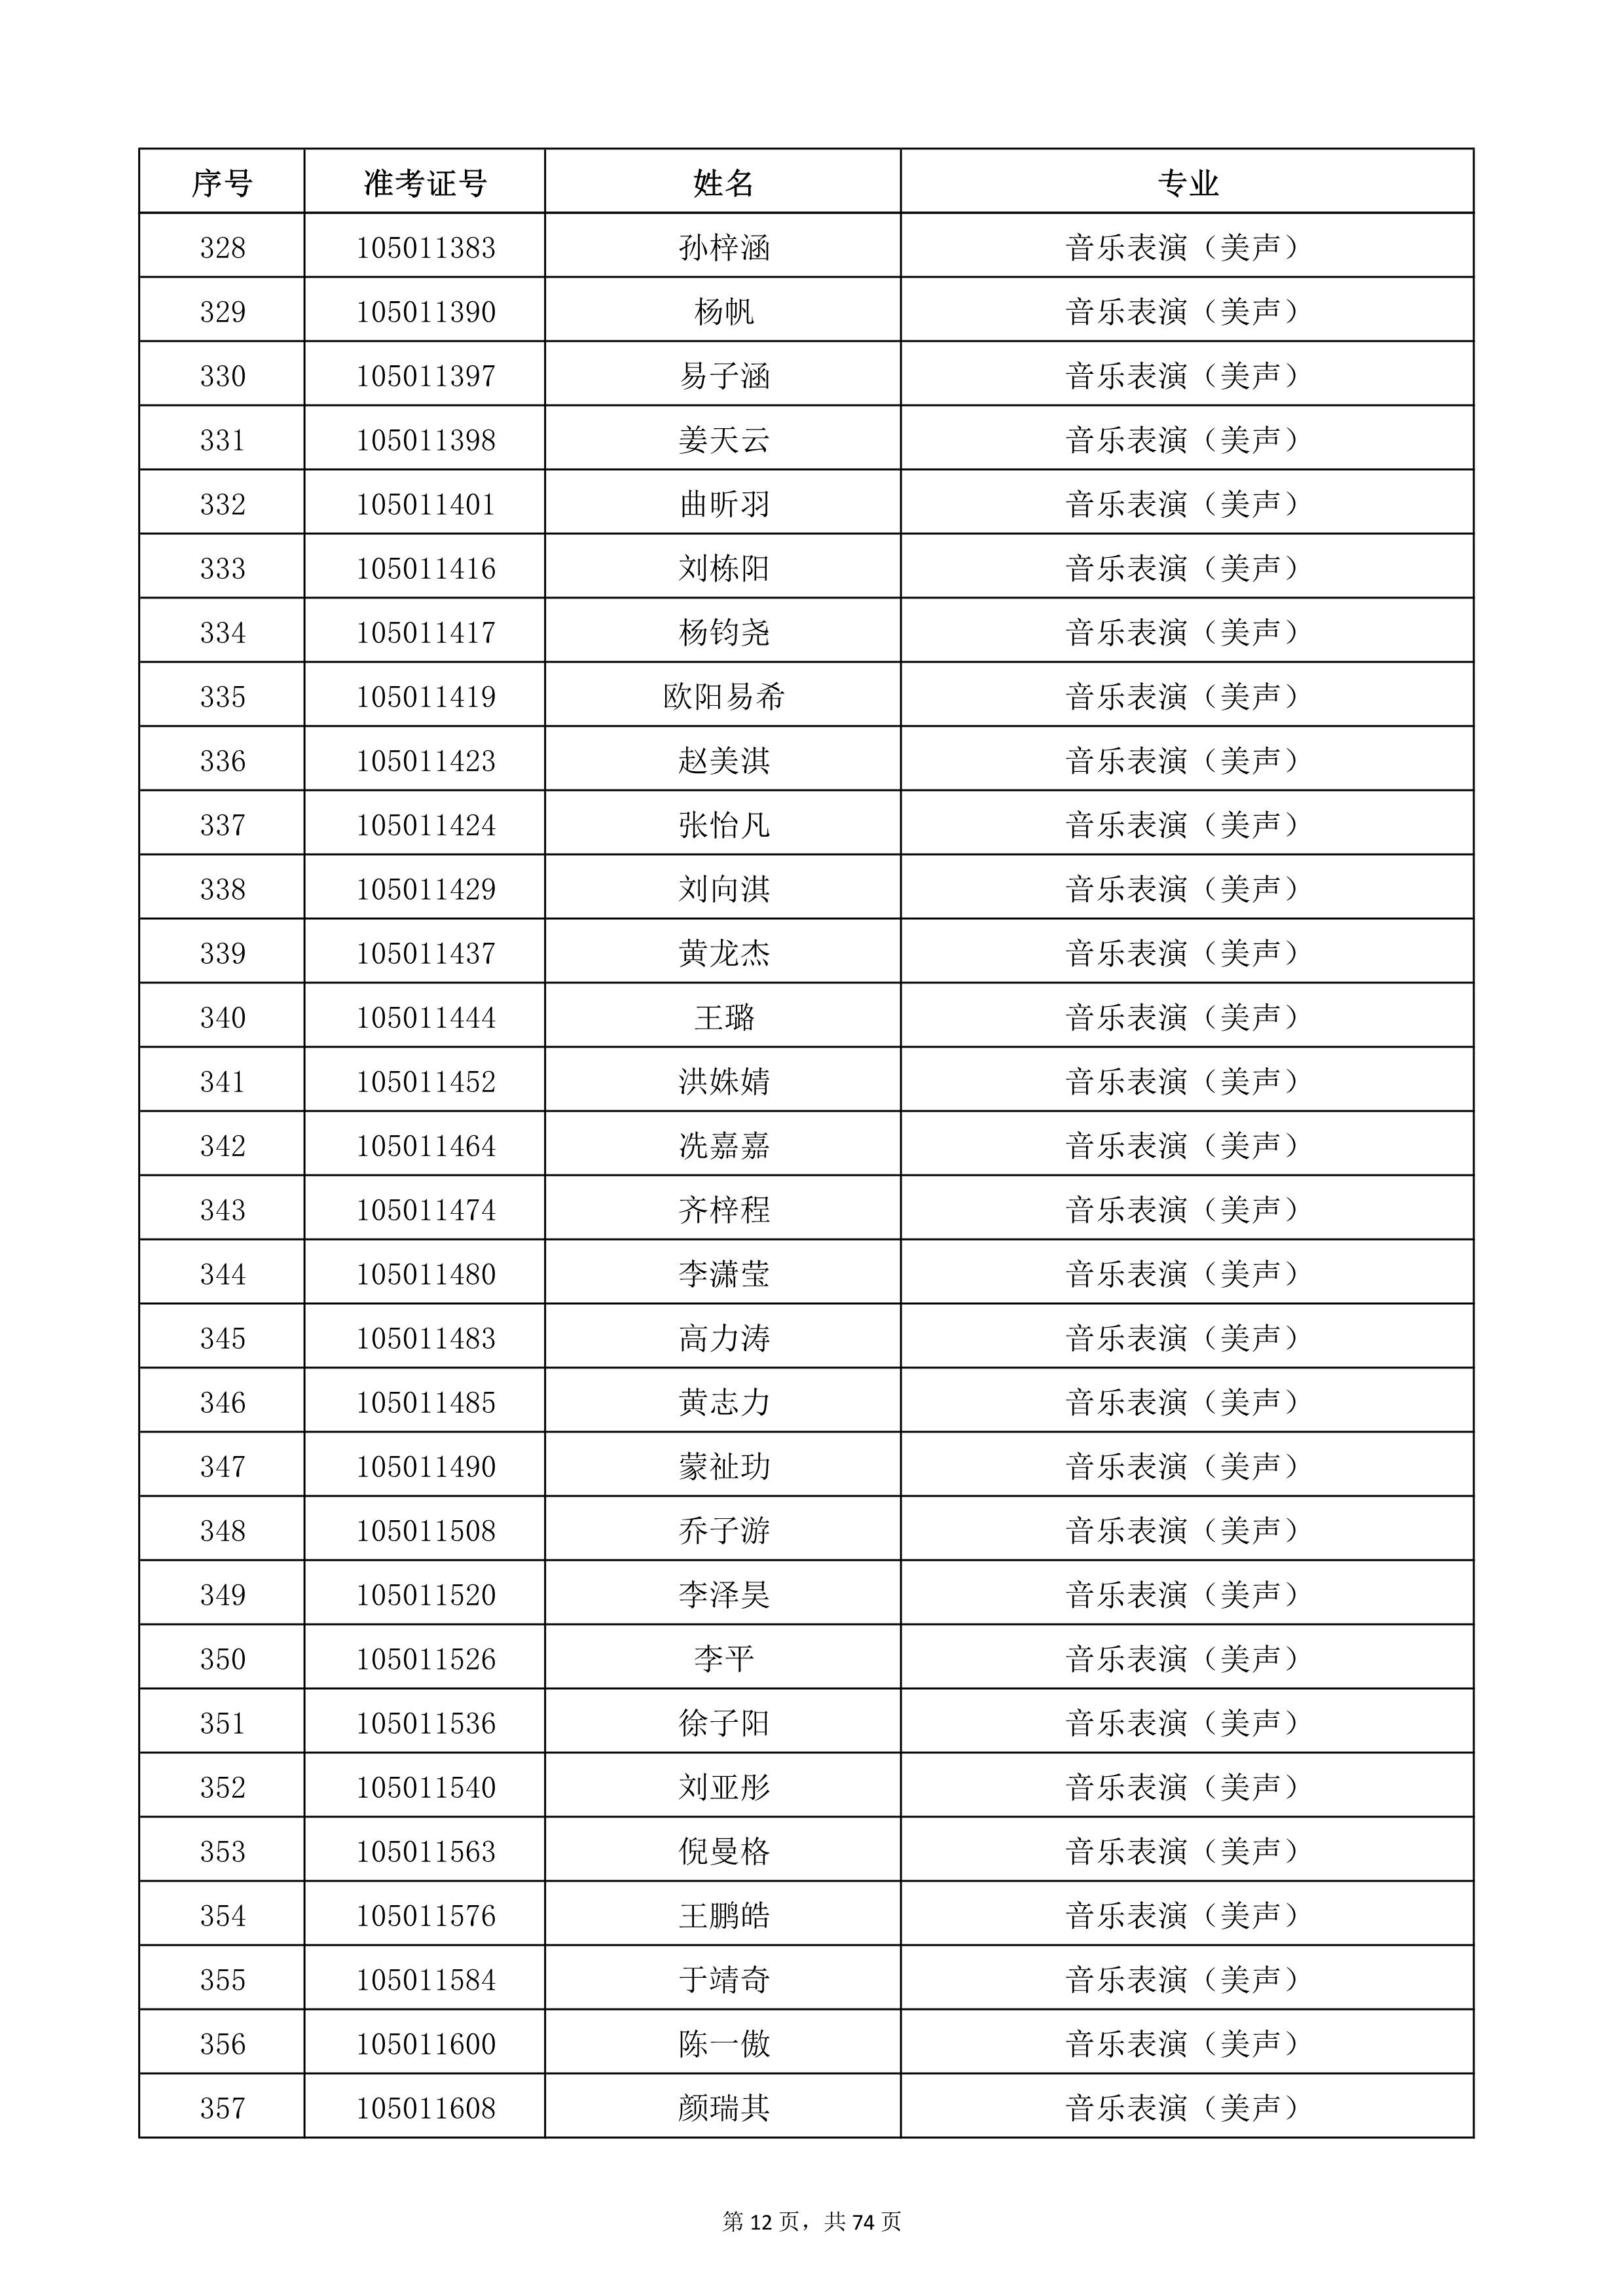 天津音乐学院2022年本科招生考试复试名单_12.jpg